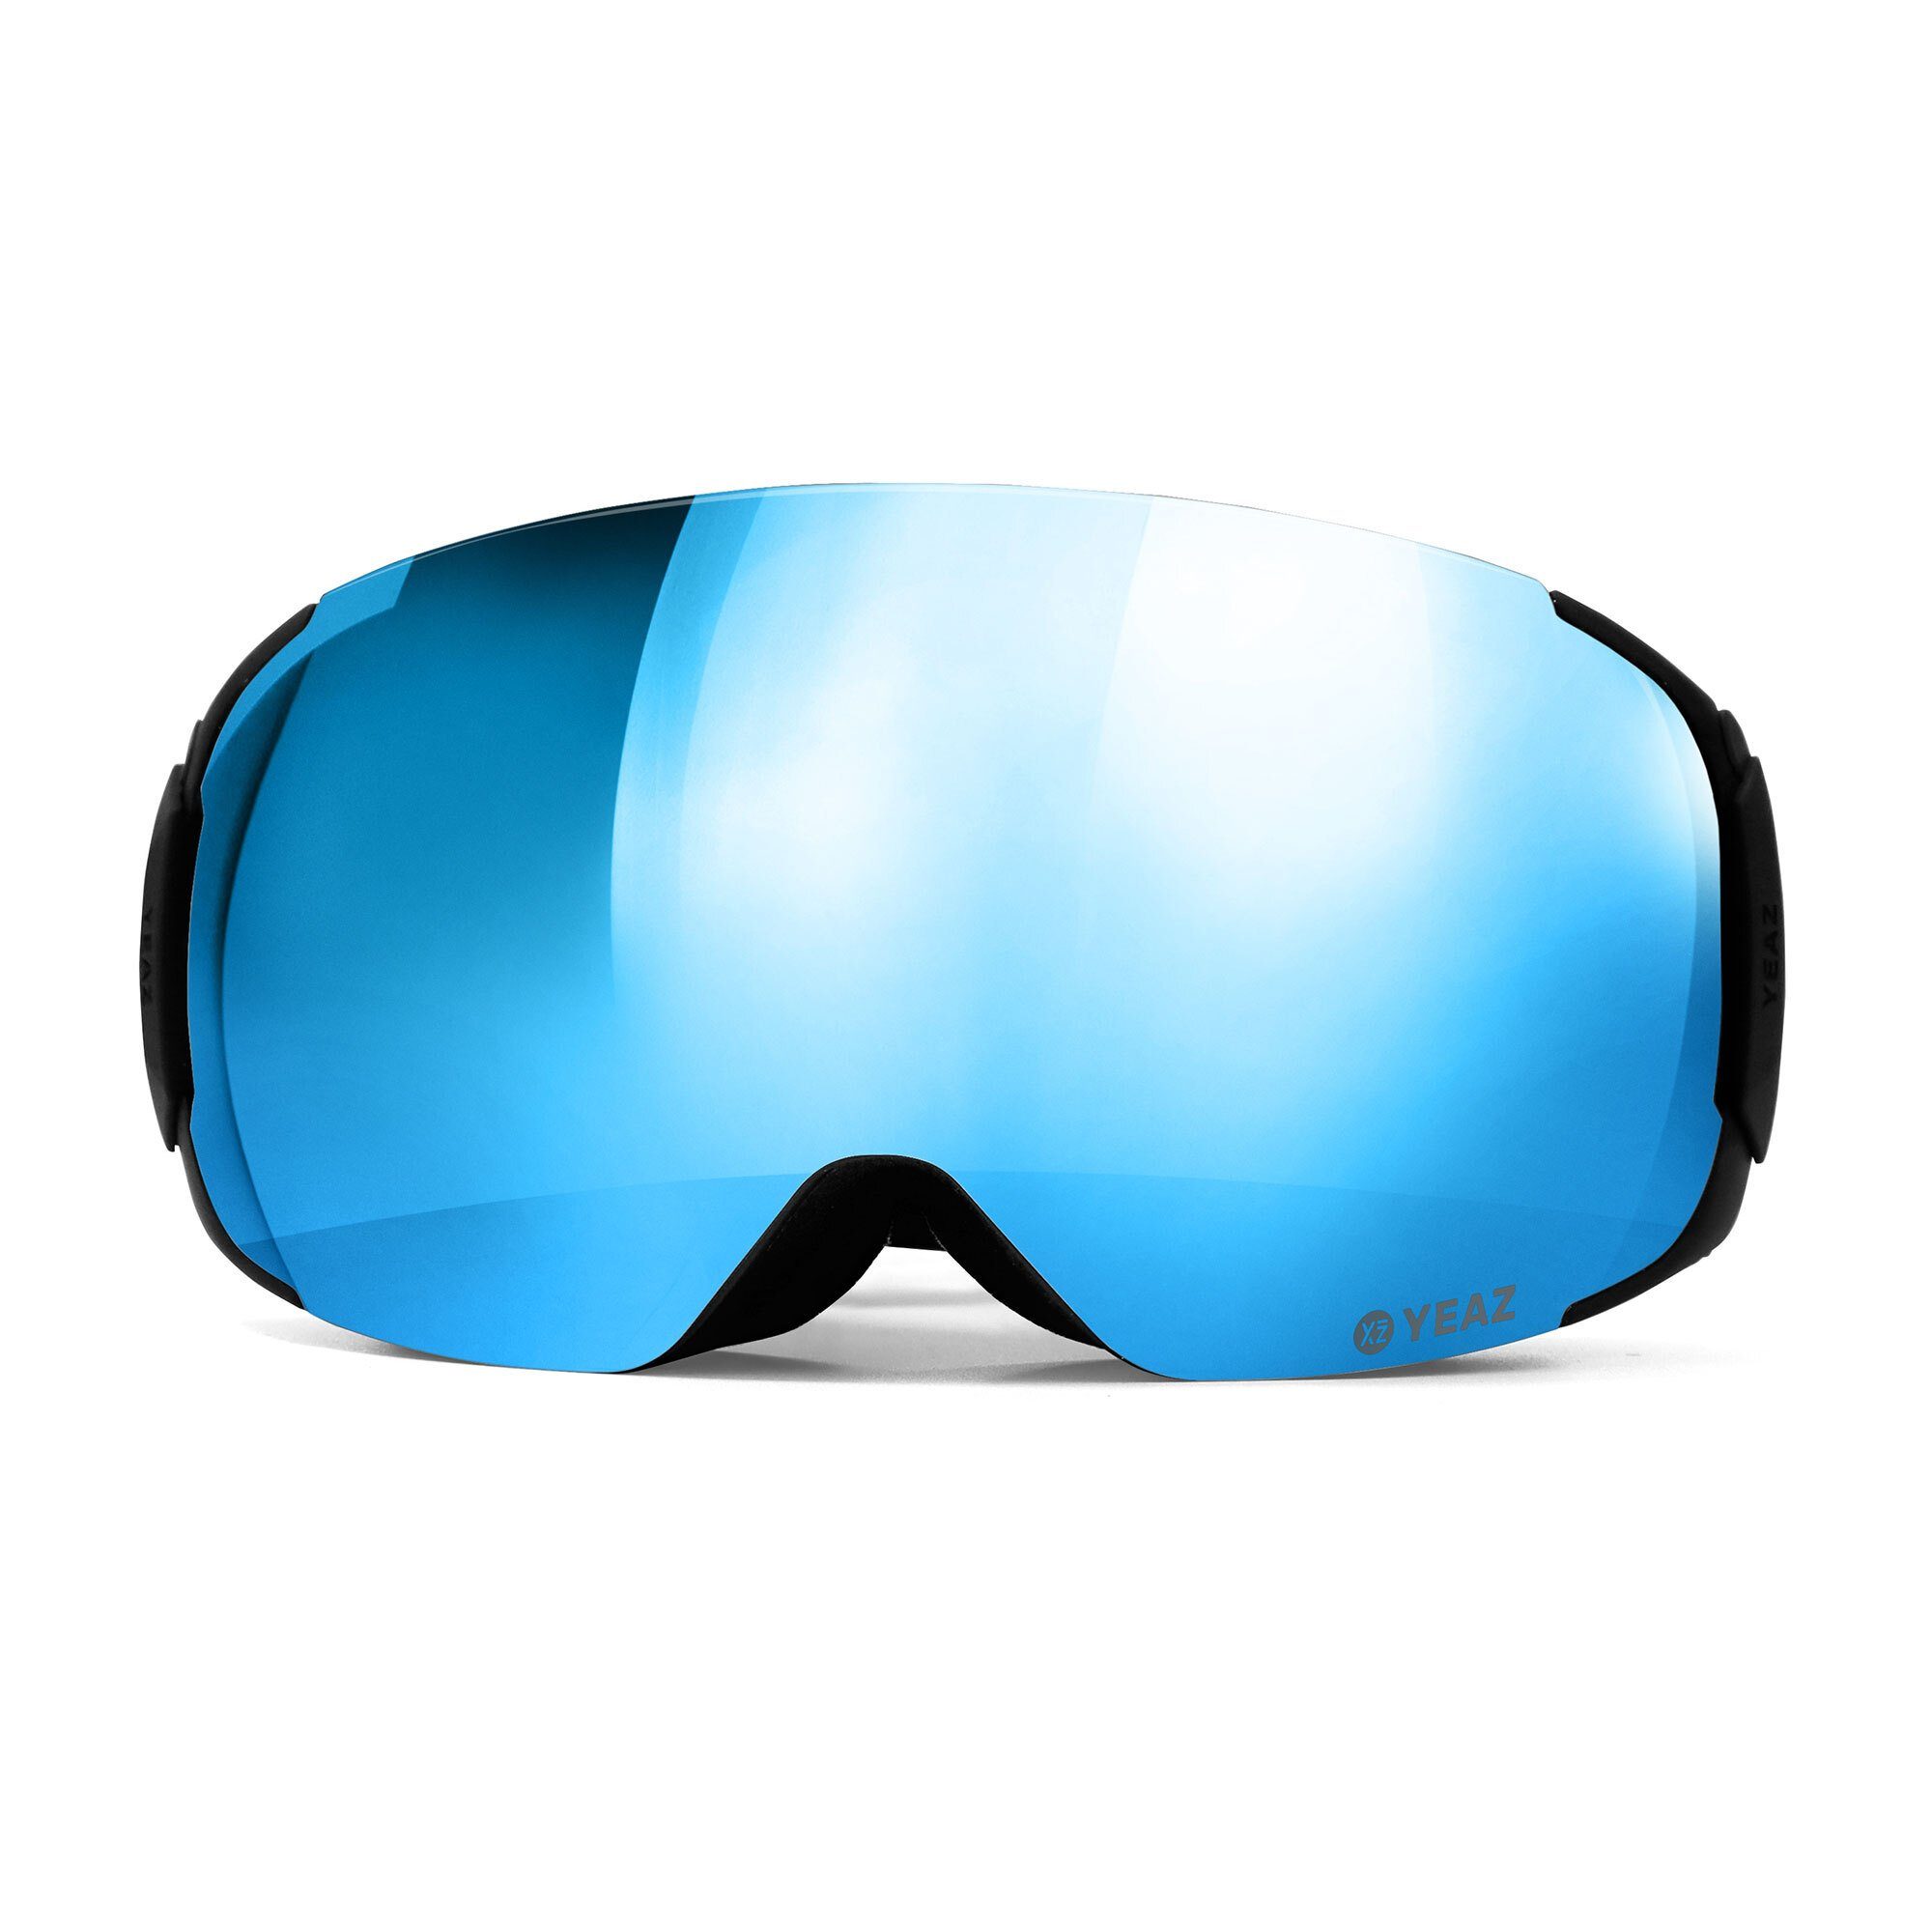 YEAZ Skibrille TWEAK-X und und ski- Erwachsene Snowboardbrille und Premium-Ski- für Jugendliche snowboard-brille